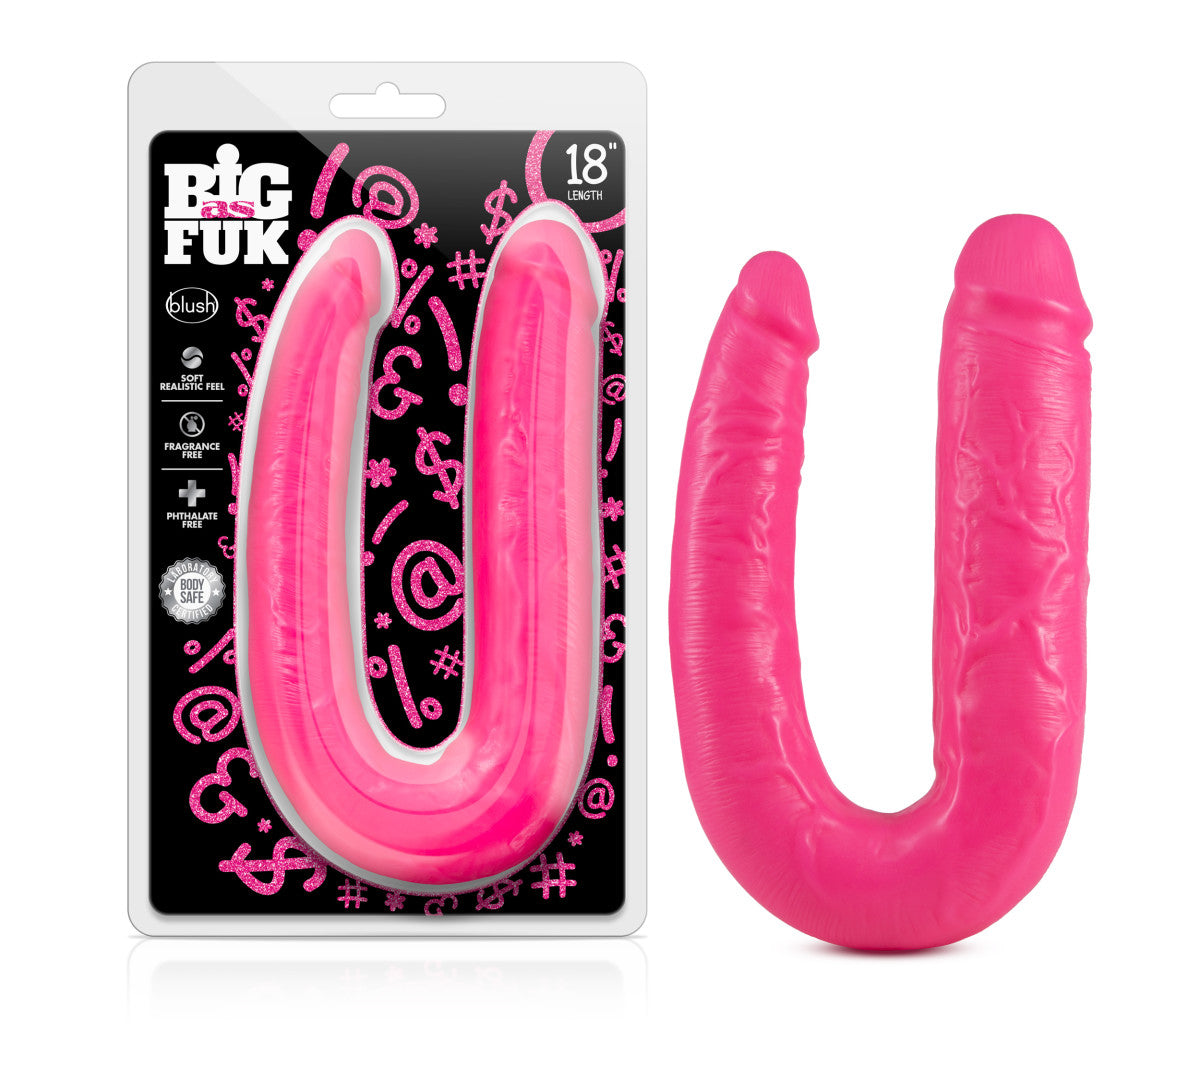 Blush Big As Fuk | Pink 18-Inch Long Dildo